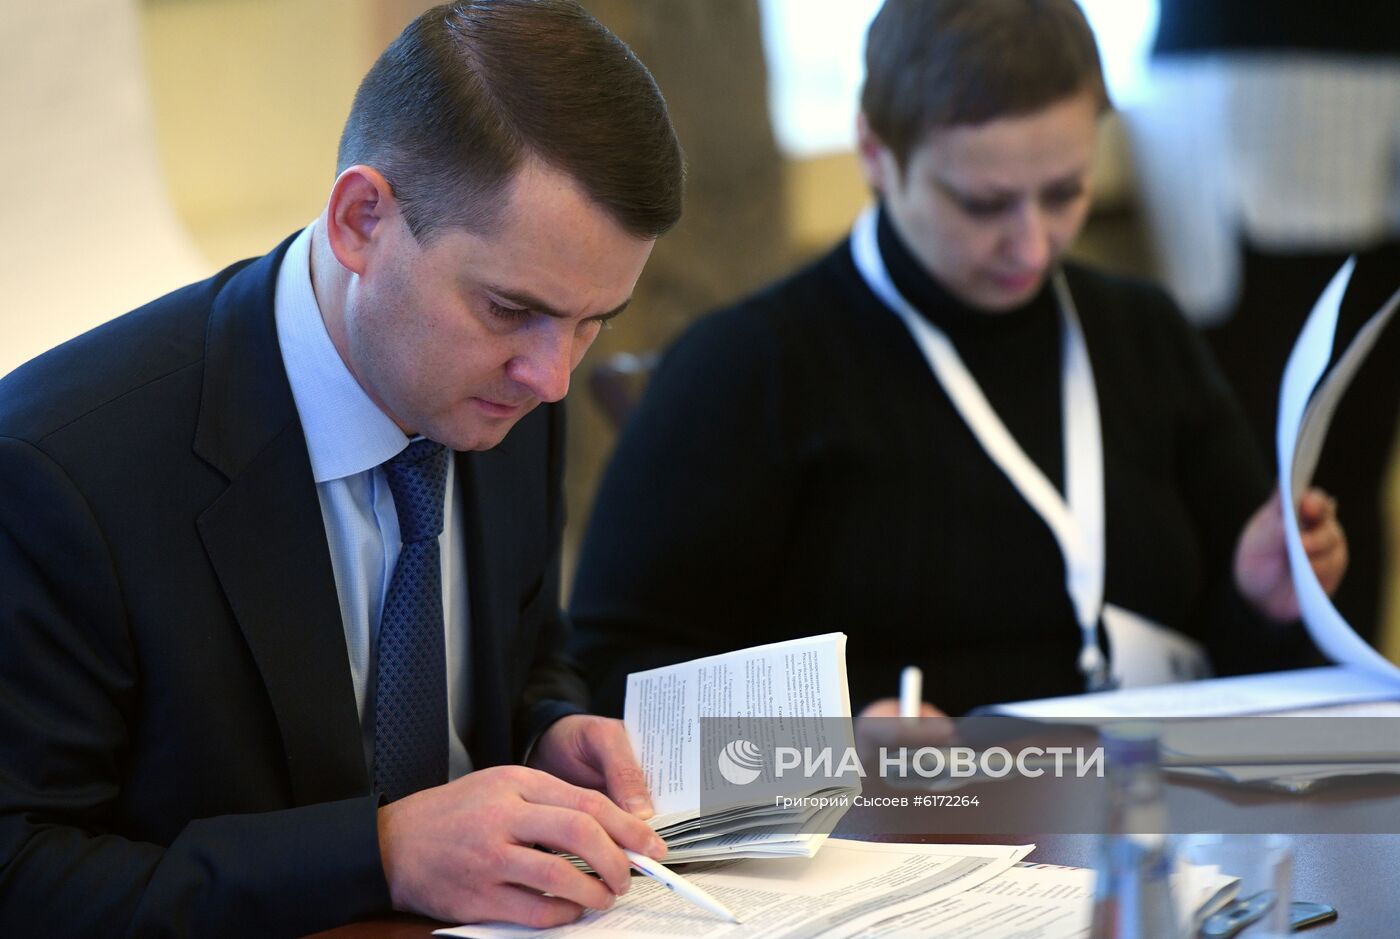 Заседание рабочей группы по подготовке предложений о внесении поправок в Конституцию РФ